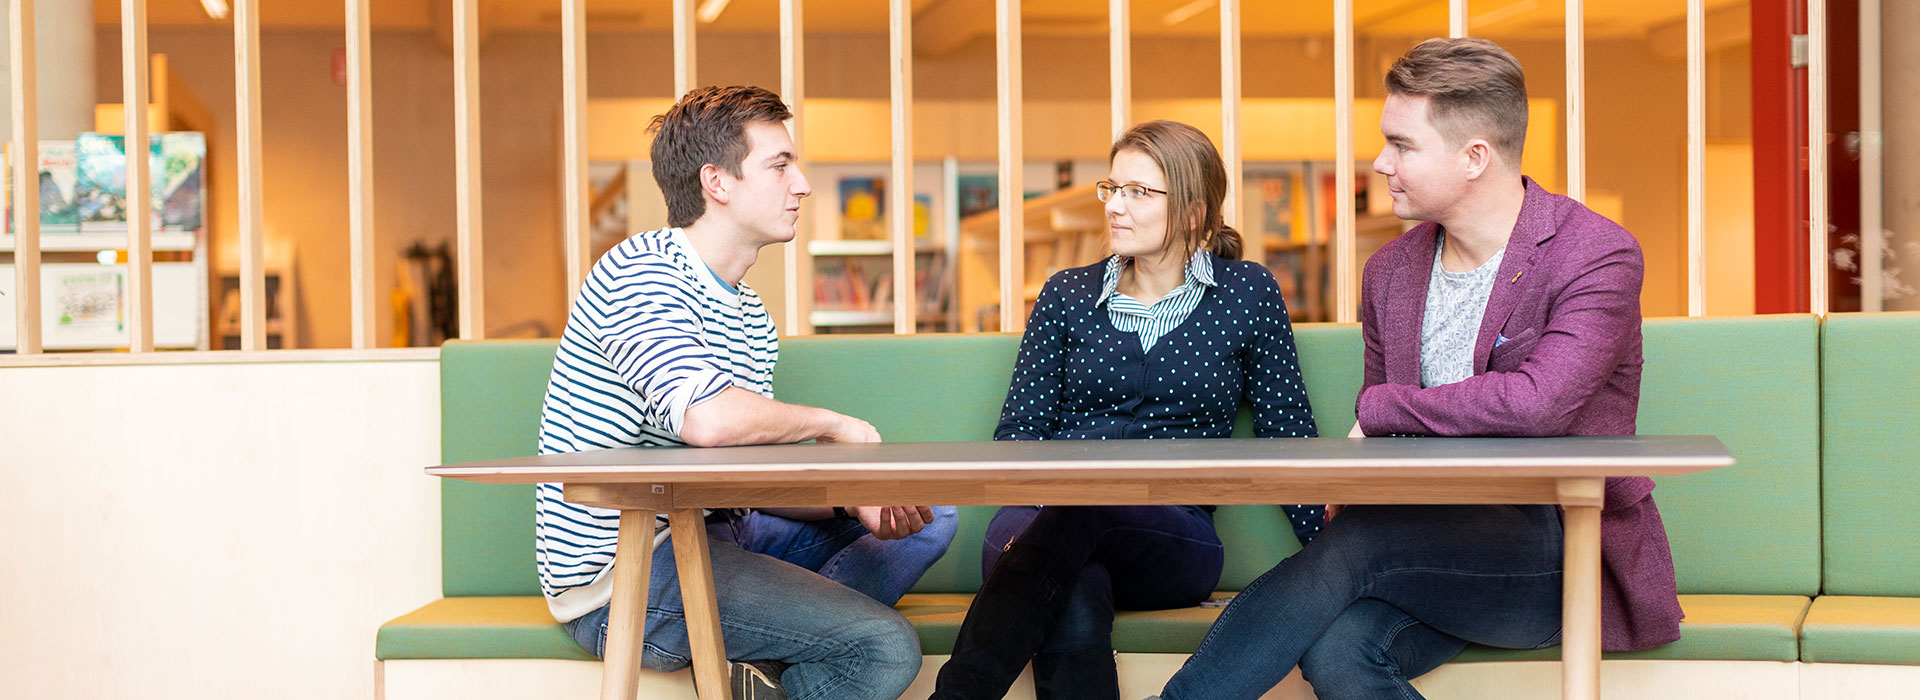 Drie volwassenen studenten met elkaar in gesprek